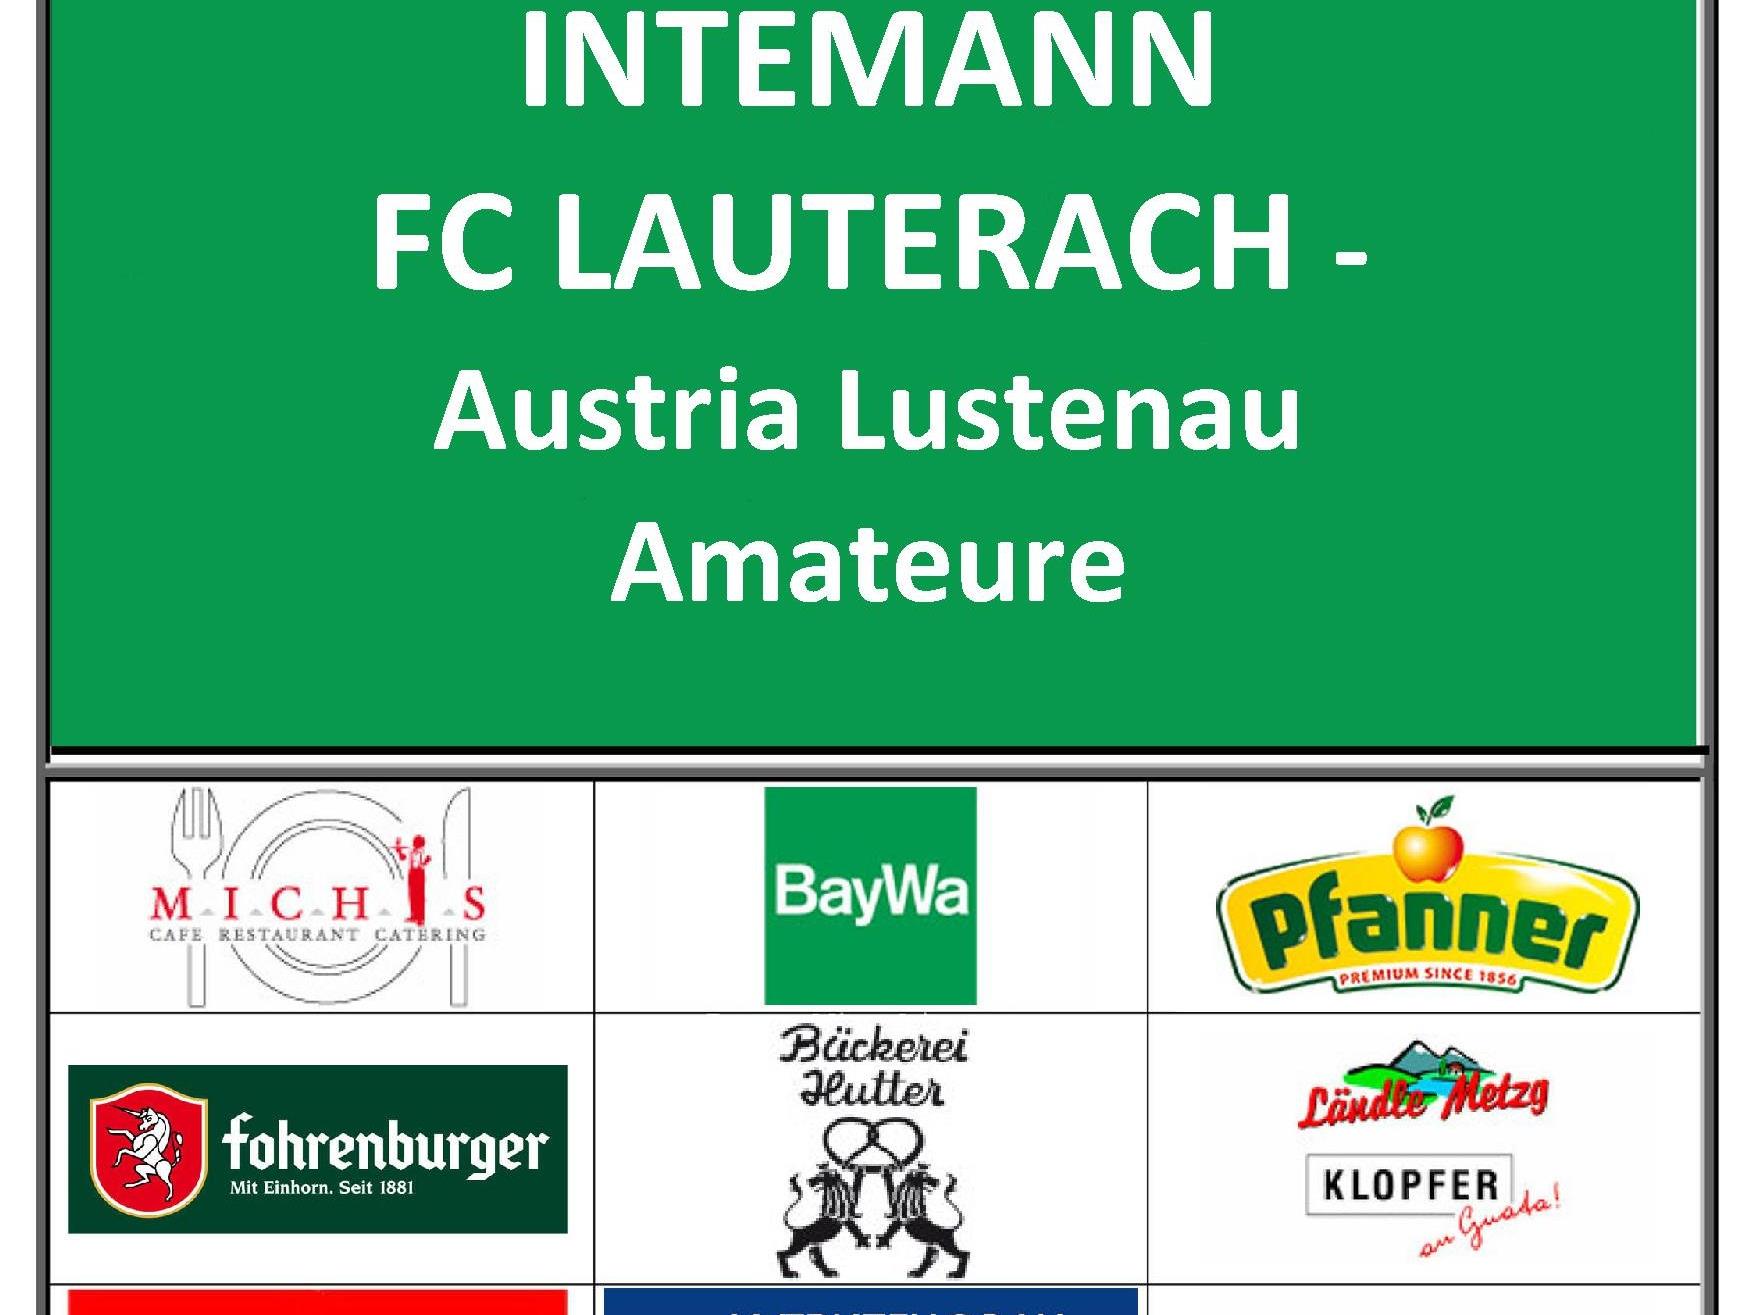 Der intemann FC Lauterach trifft auf die Amateure von Austria Lustenau